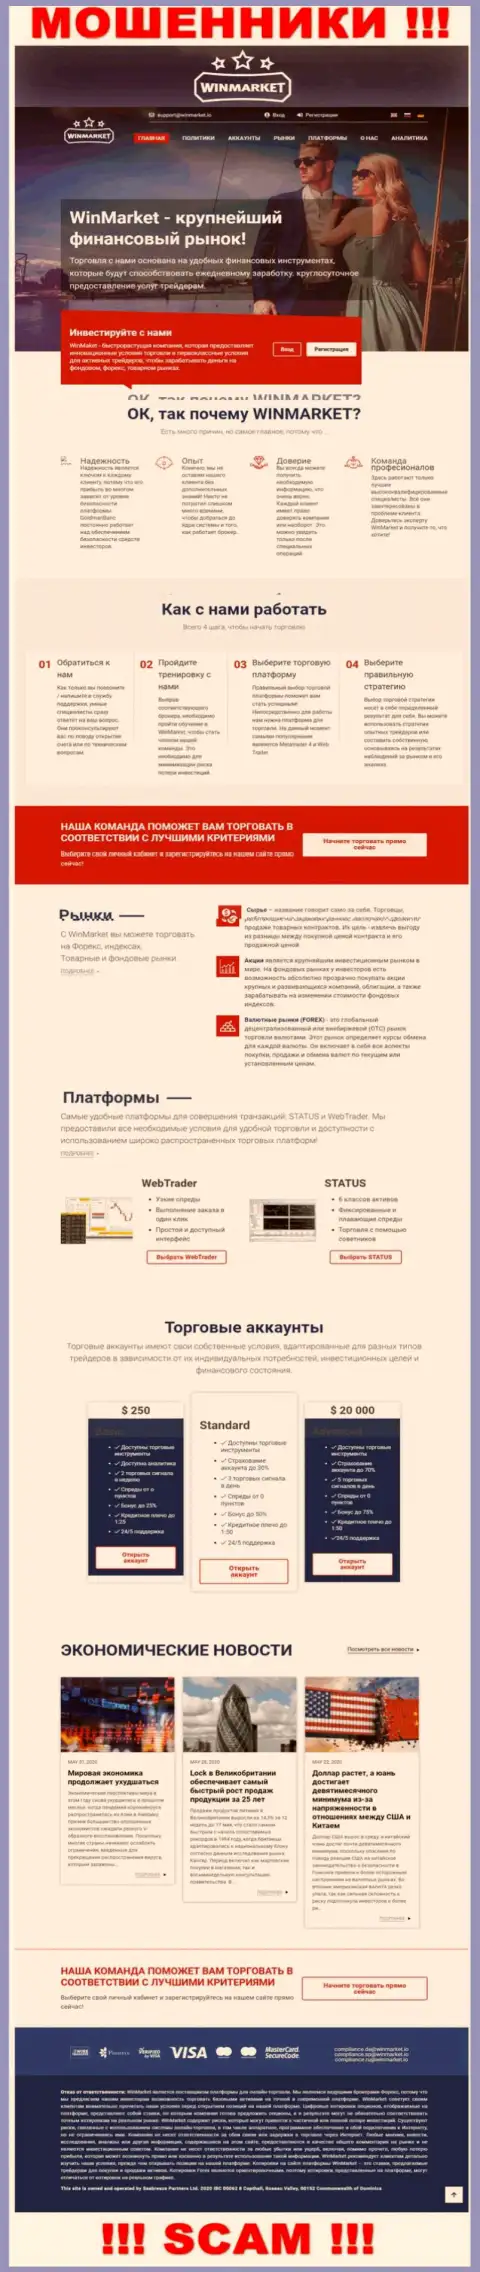 Лживая информация от компании ВинМаркет на официальном сайте мошенников